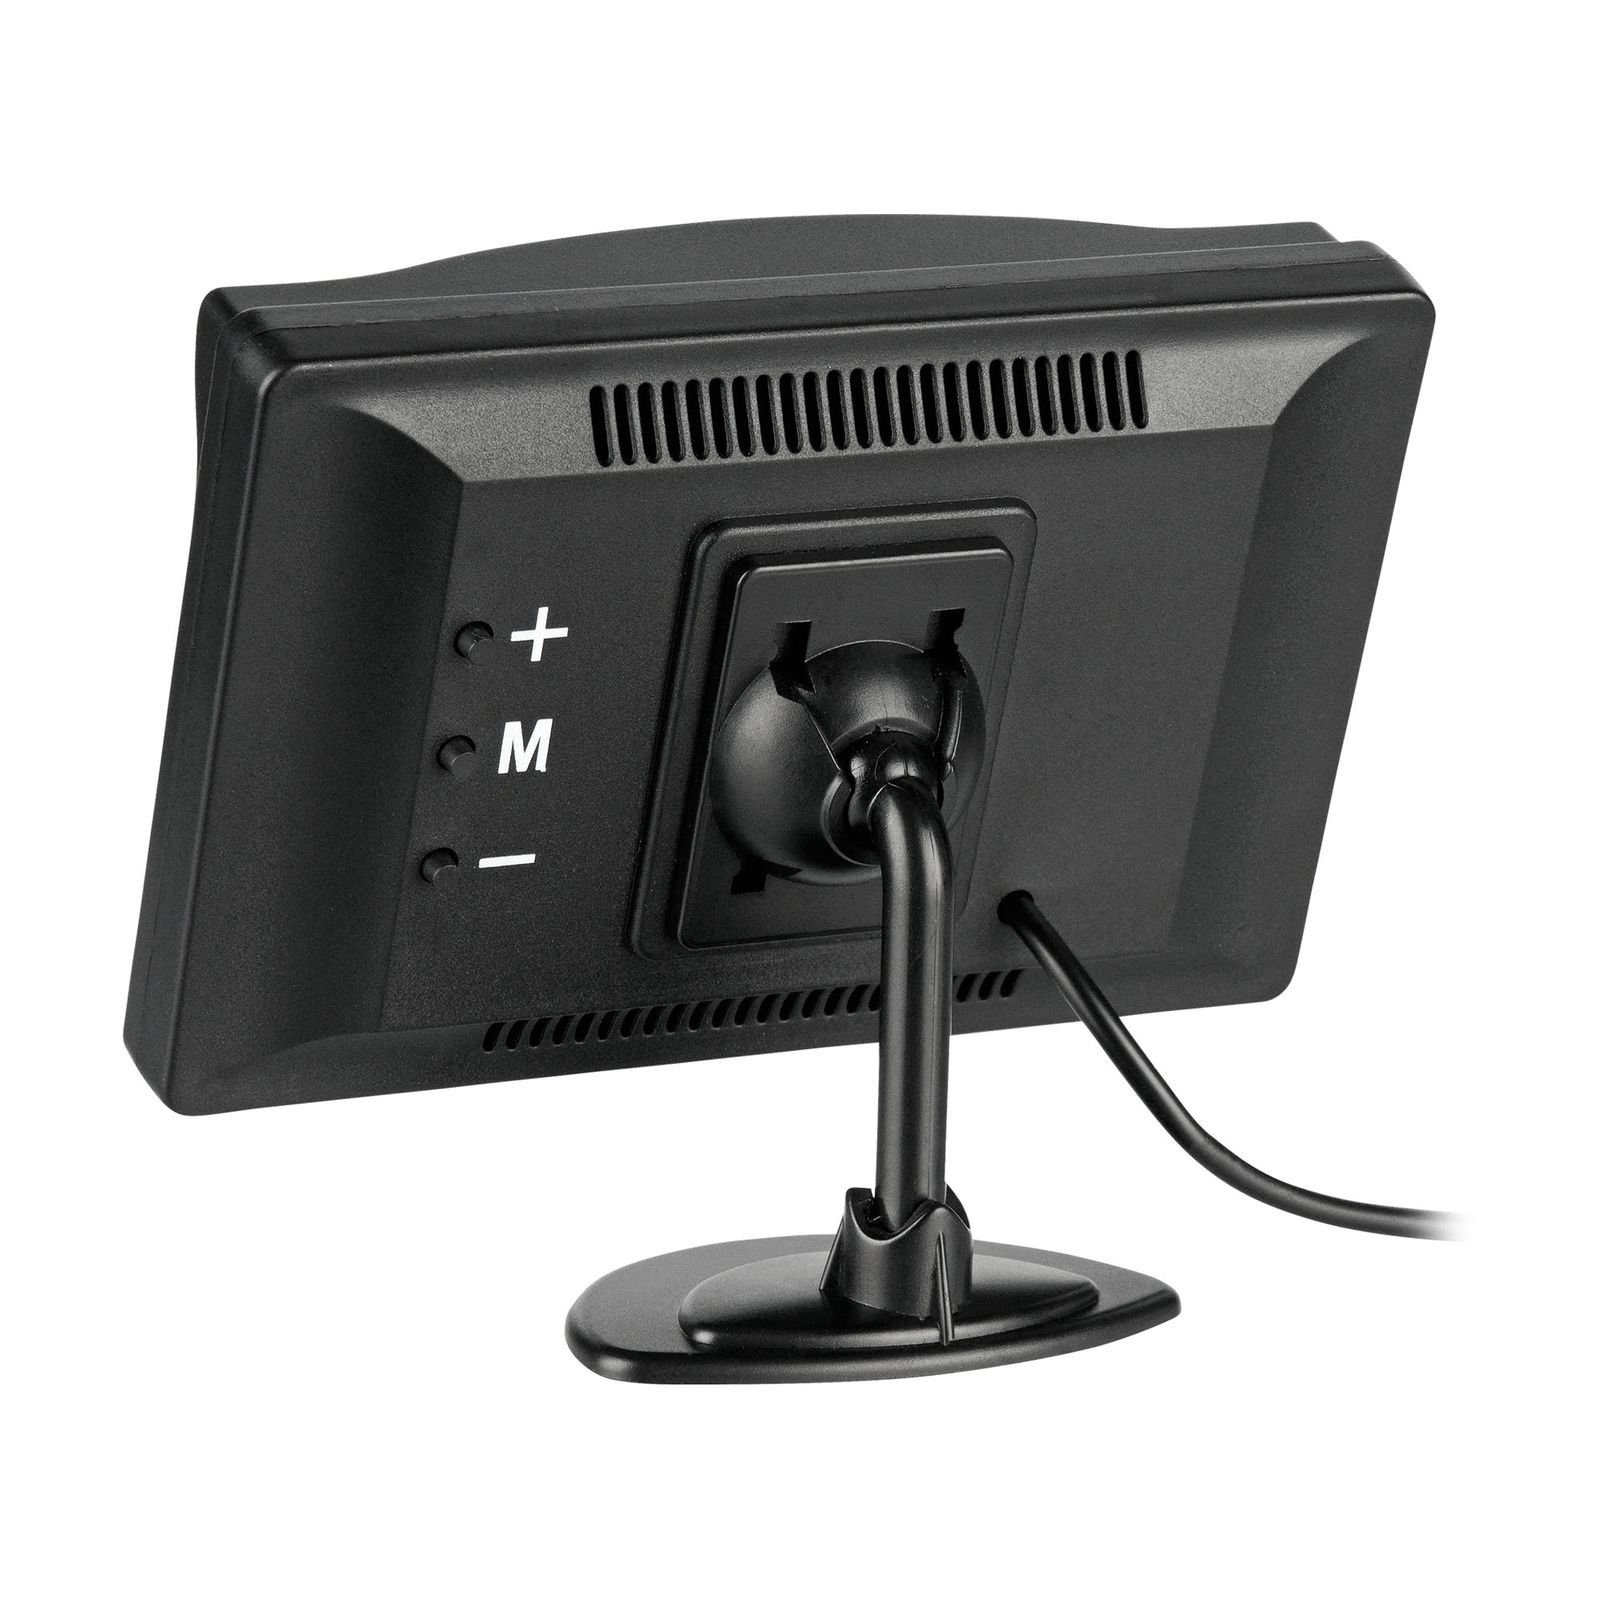 CARMATRIX BDW-500 Rückfahrkamera (HD Funk-Rückfahrsystem HD 170°, mit 5" für und Monitor Rückfahrkamera, Auflösung, Auto IPS Kennzeichenhalter) Monitor, Nummernschild